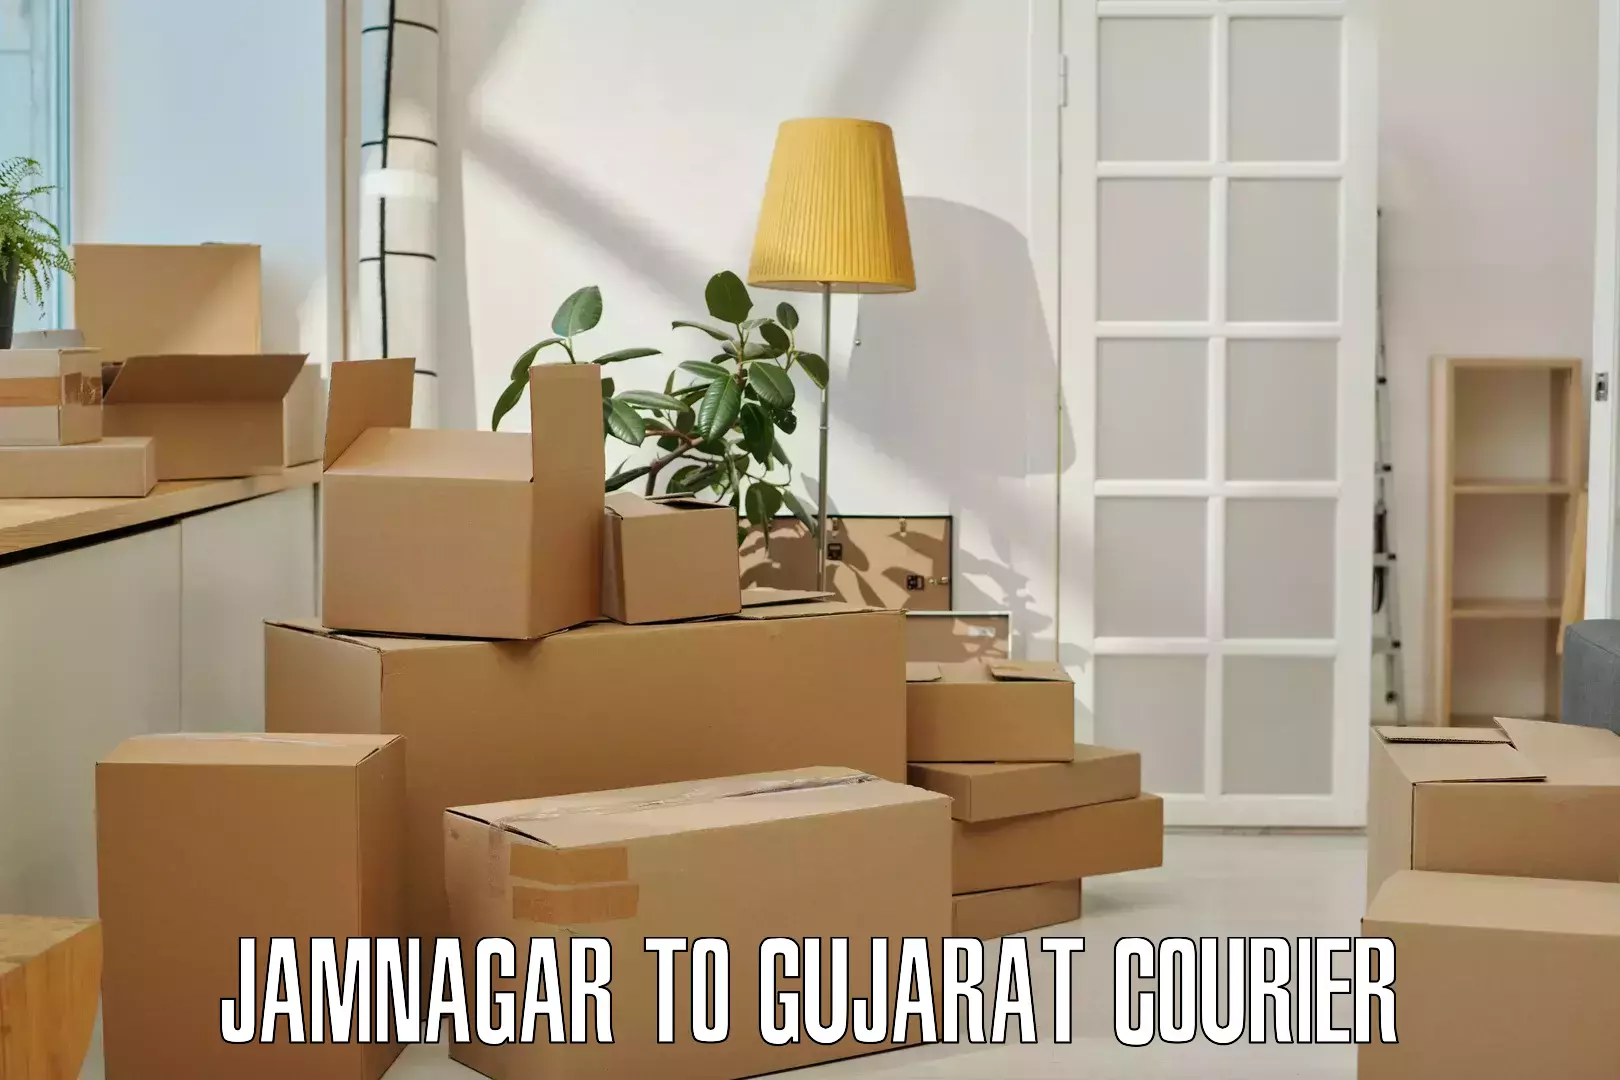 Doorstep delivery service Jamnagar to Becharaji